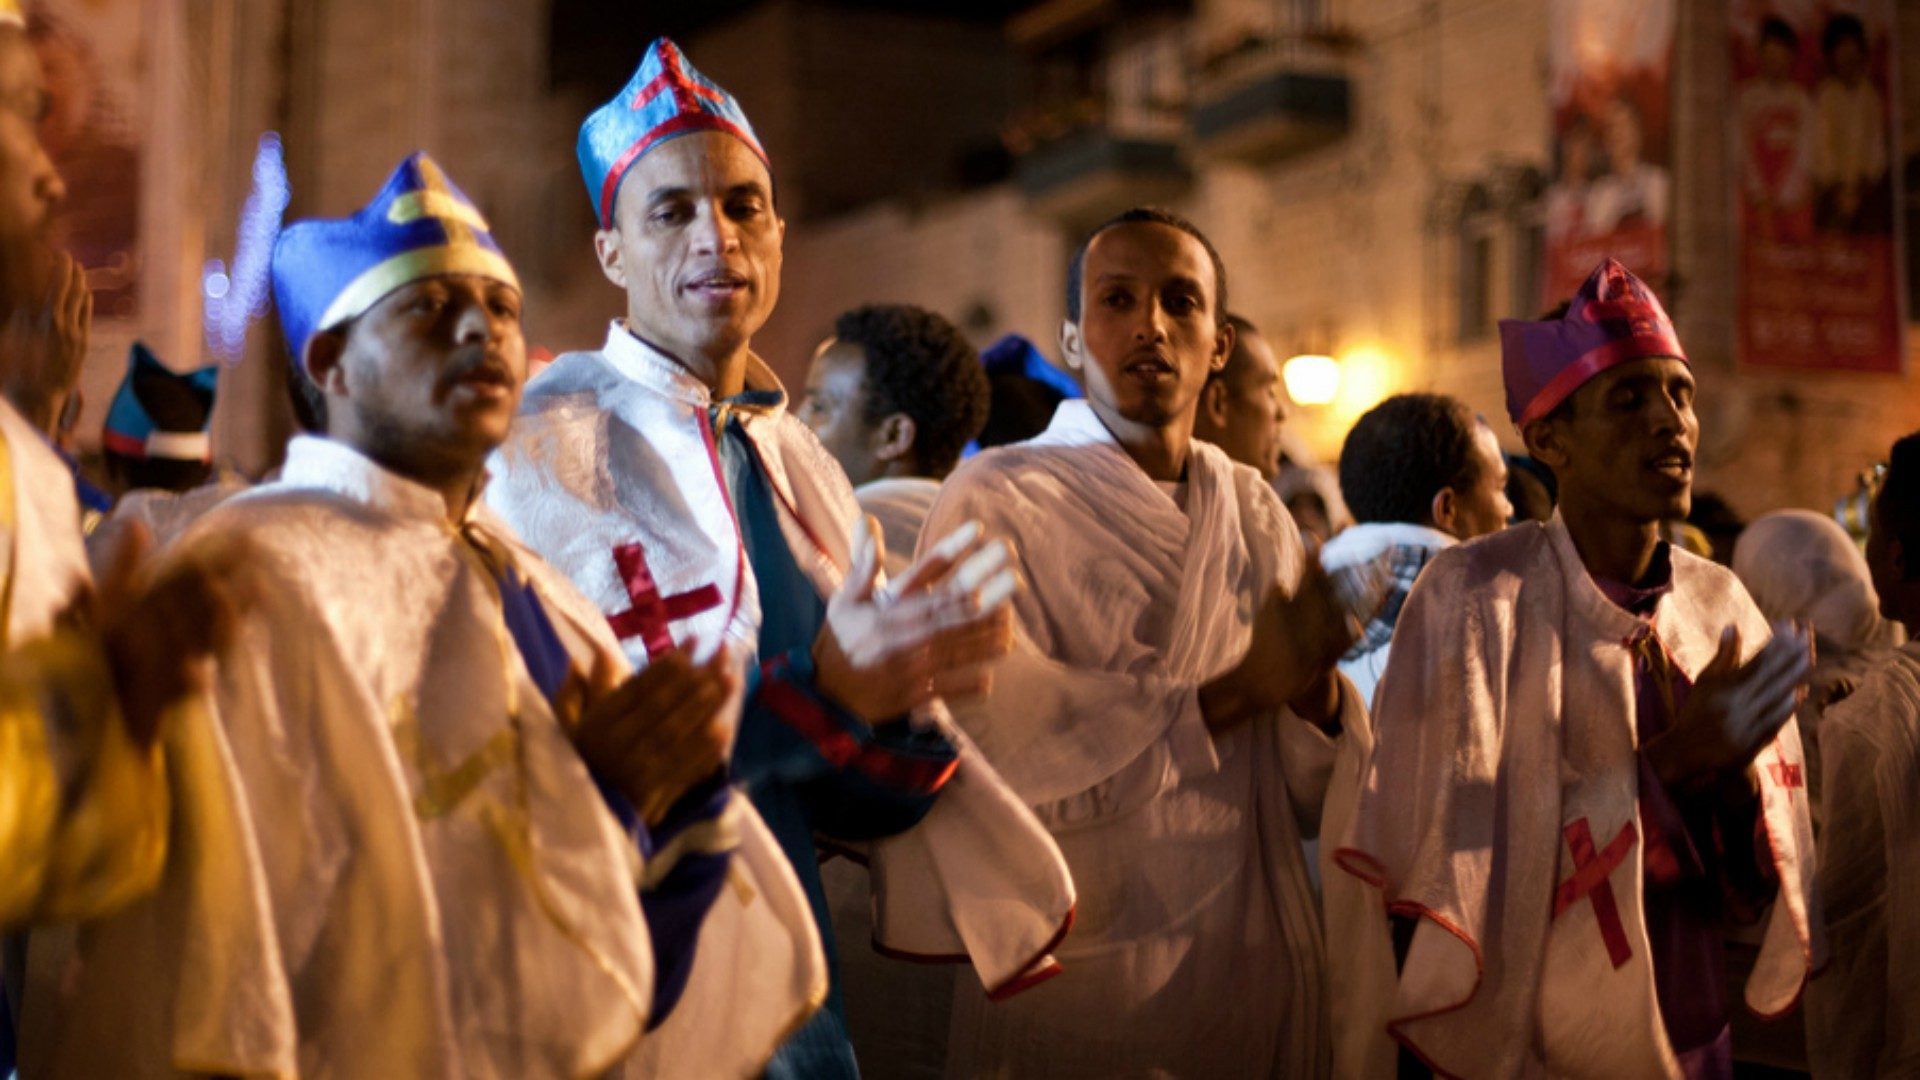 Les chrétiens d'Erythrée sont sous pression du gouvernement (Photo: Beautiful Faces of Berlin/Flickr/CC BY-NC-ND 2.0)